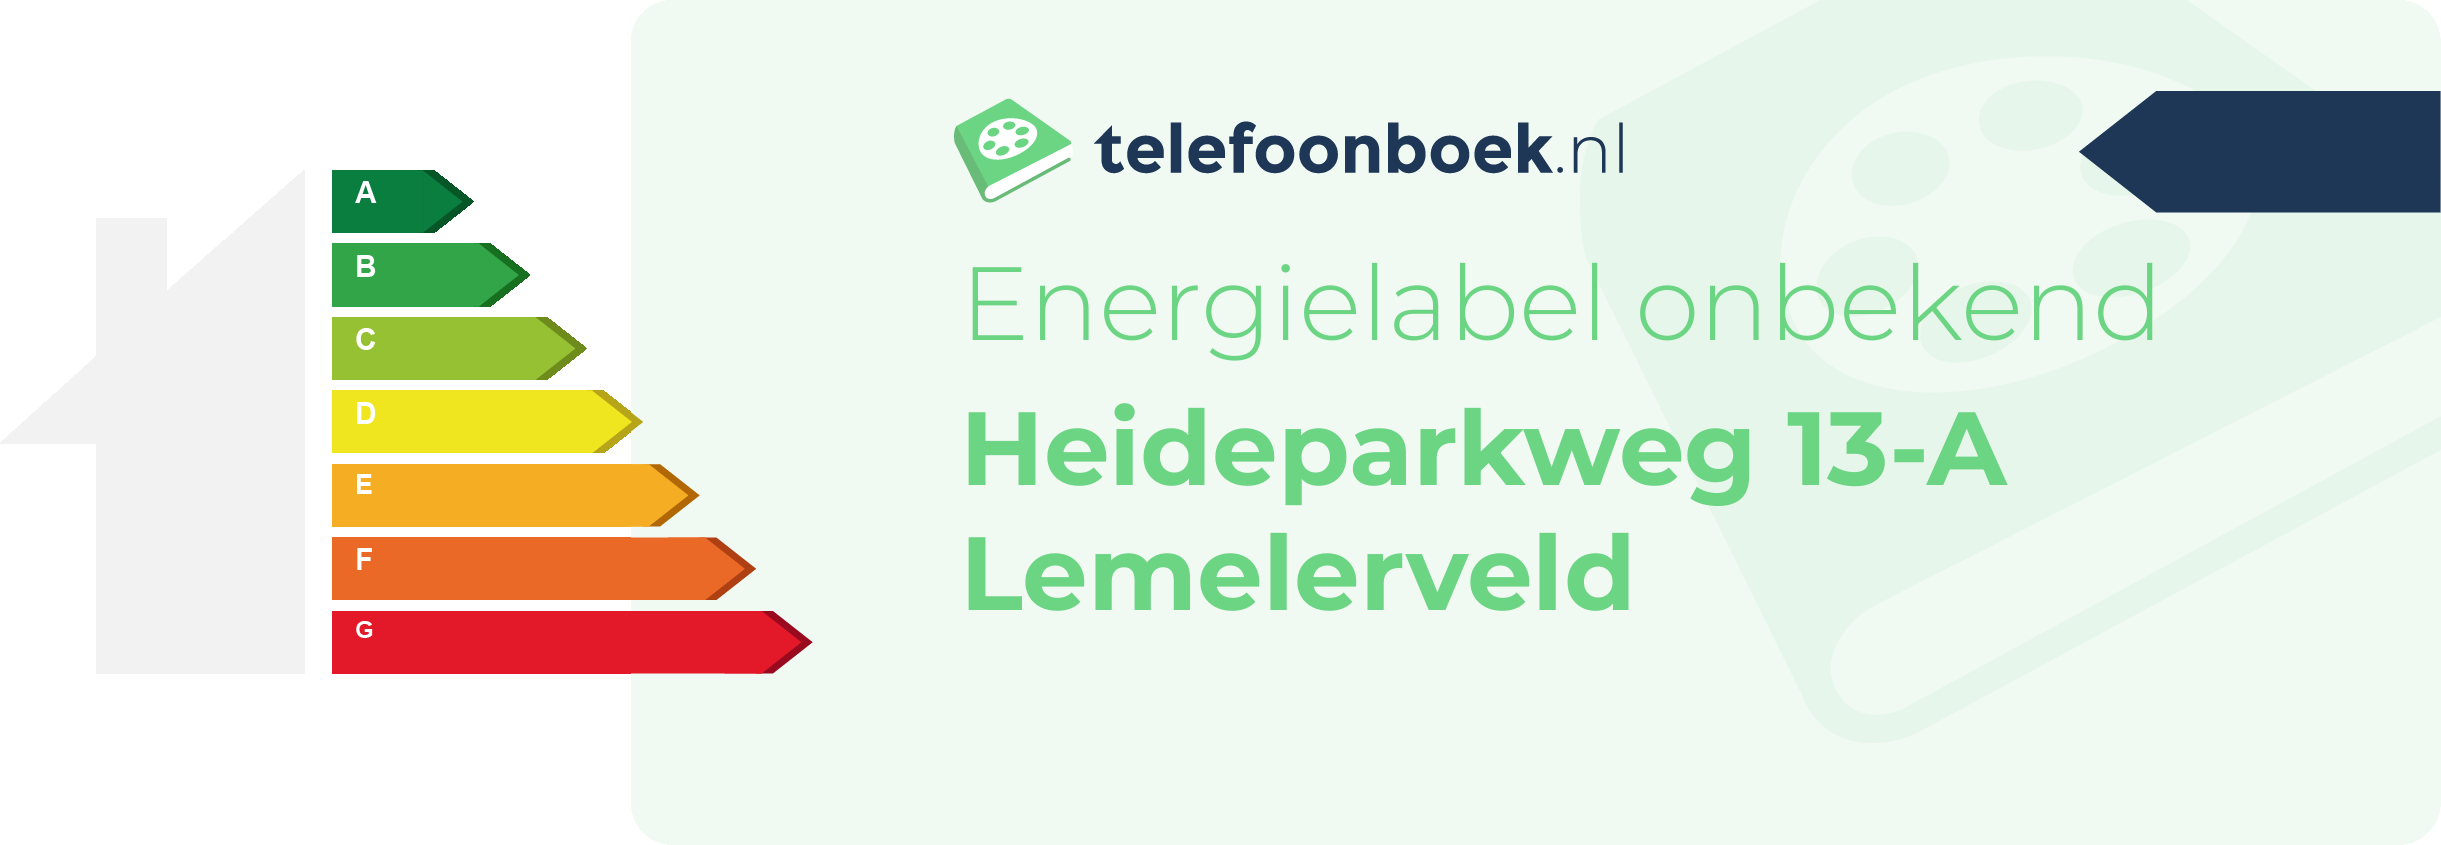 Energielabel Heideparkweg 13-A Lemelerveld